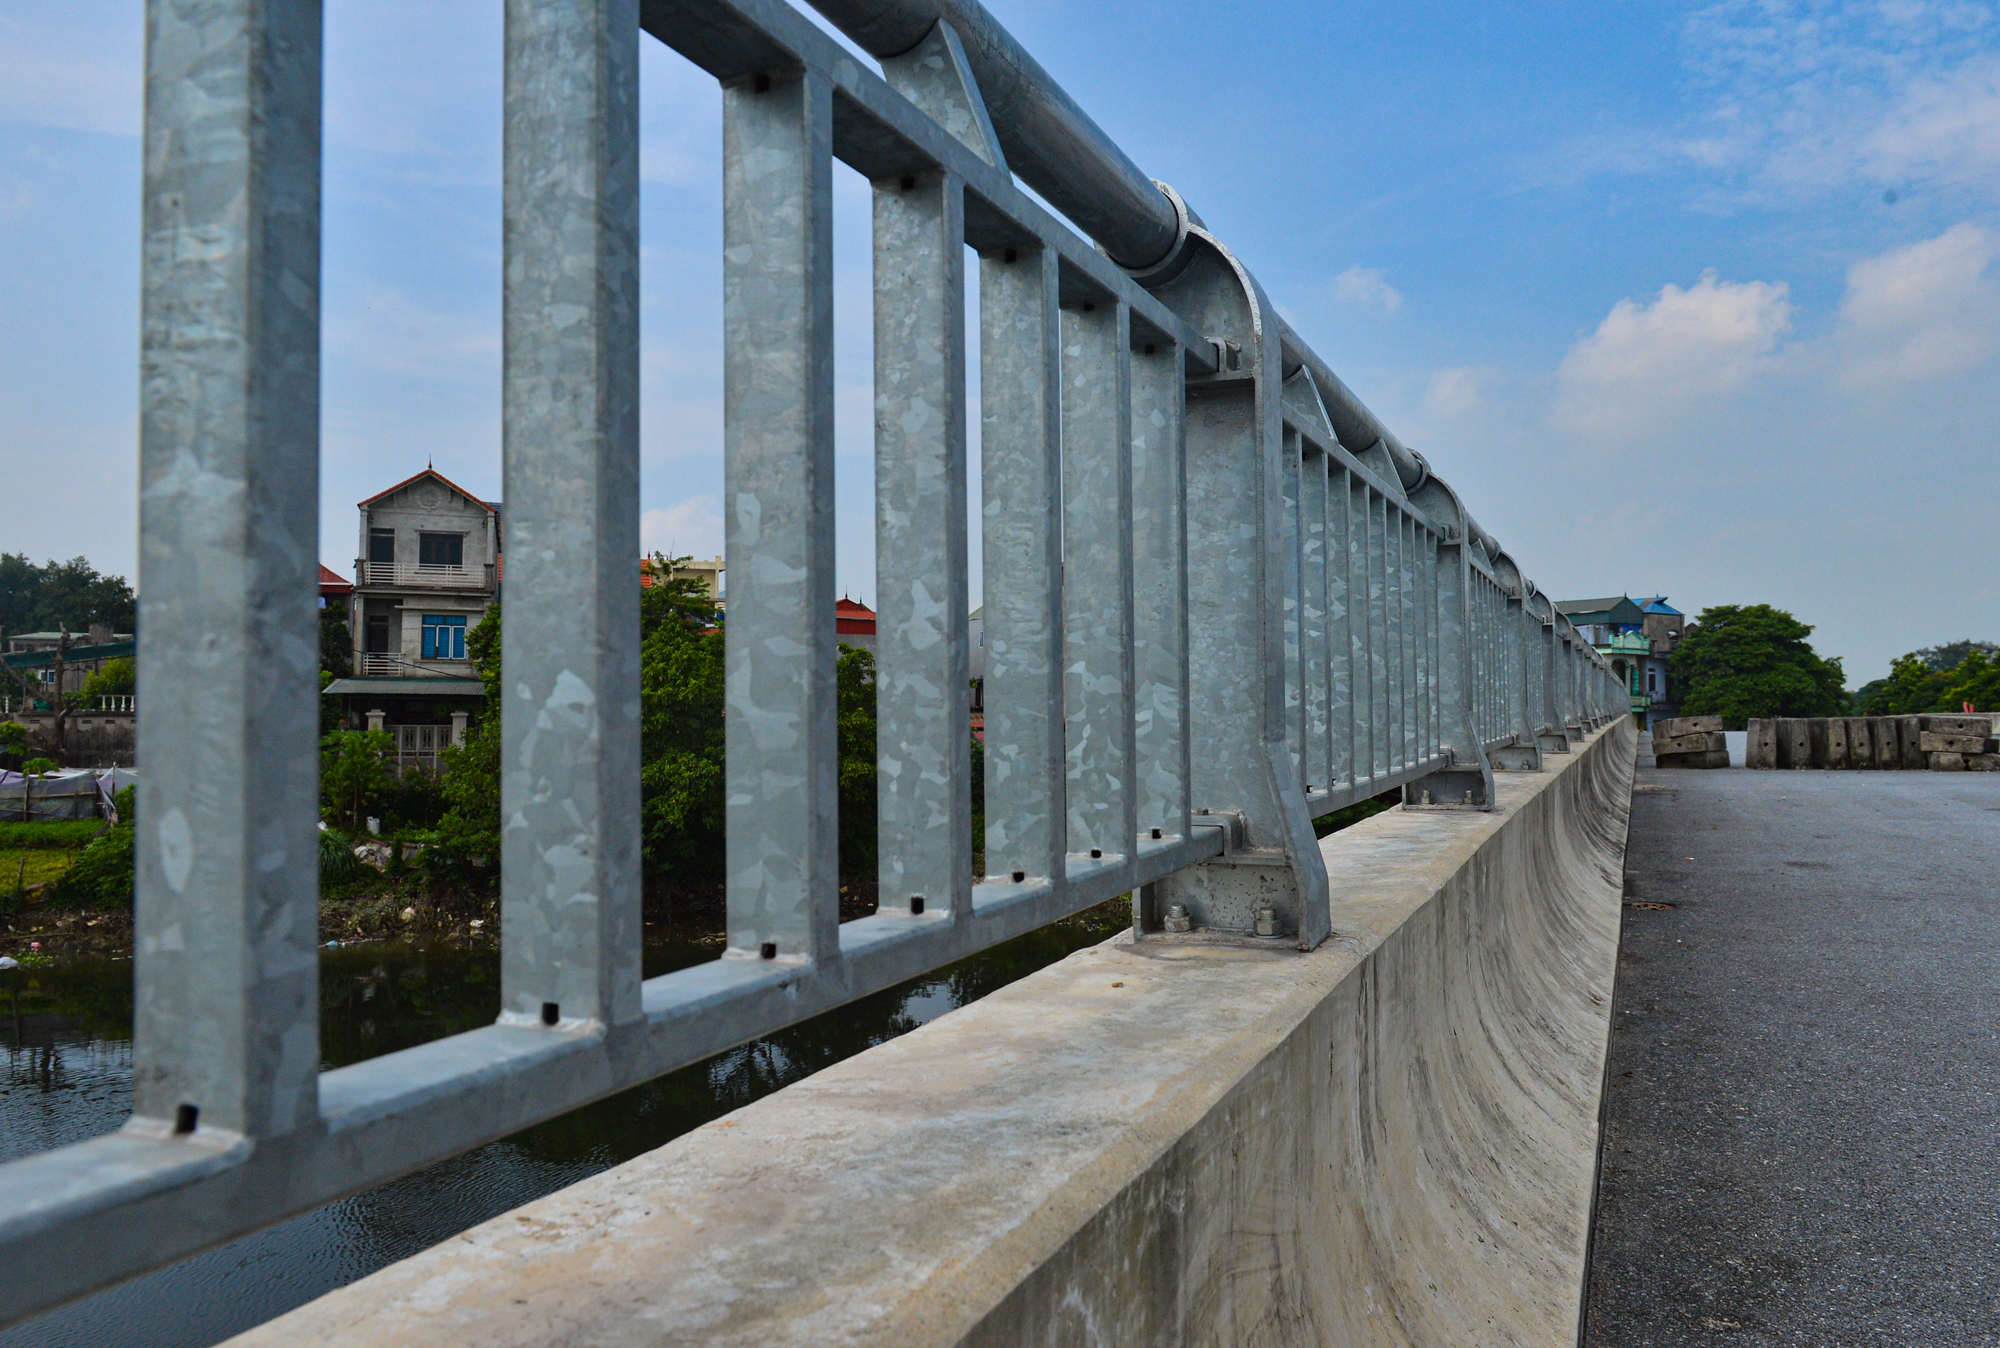 Ảnh, clip: Cây cầu trăm tỷ ở ngoại thành Hà Nội sắp hoàn thành nhưng bị bỏ không gần 2 năm - Ảnh 10.